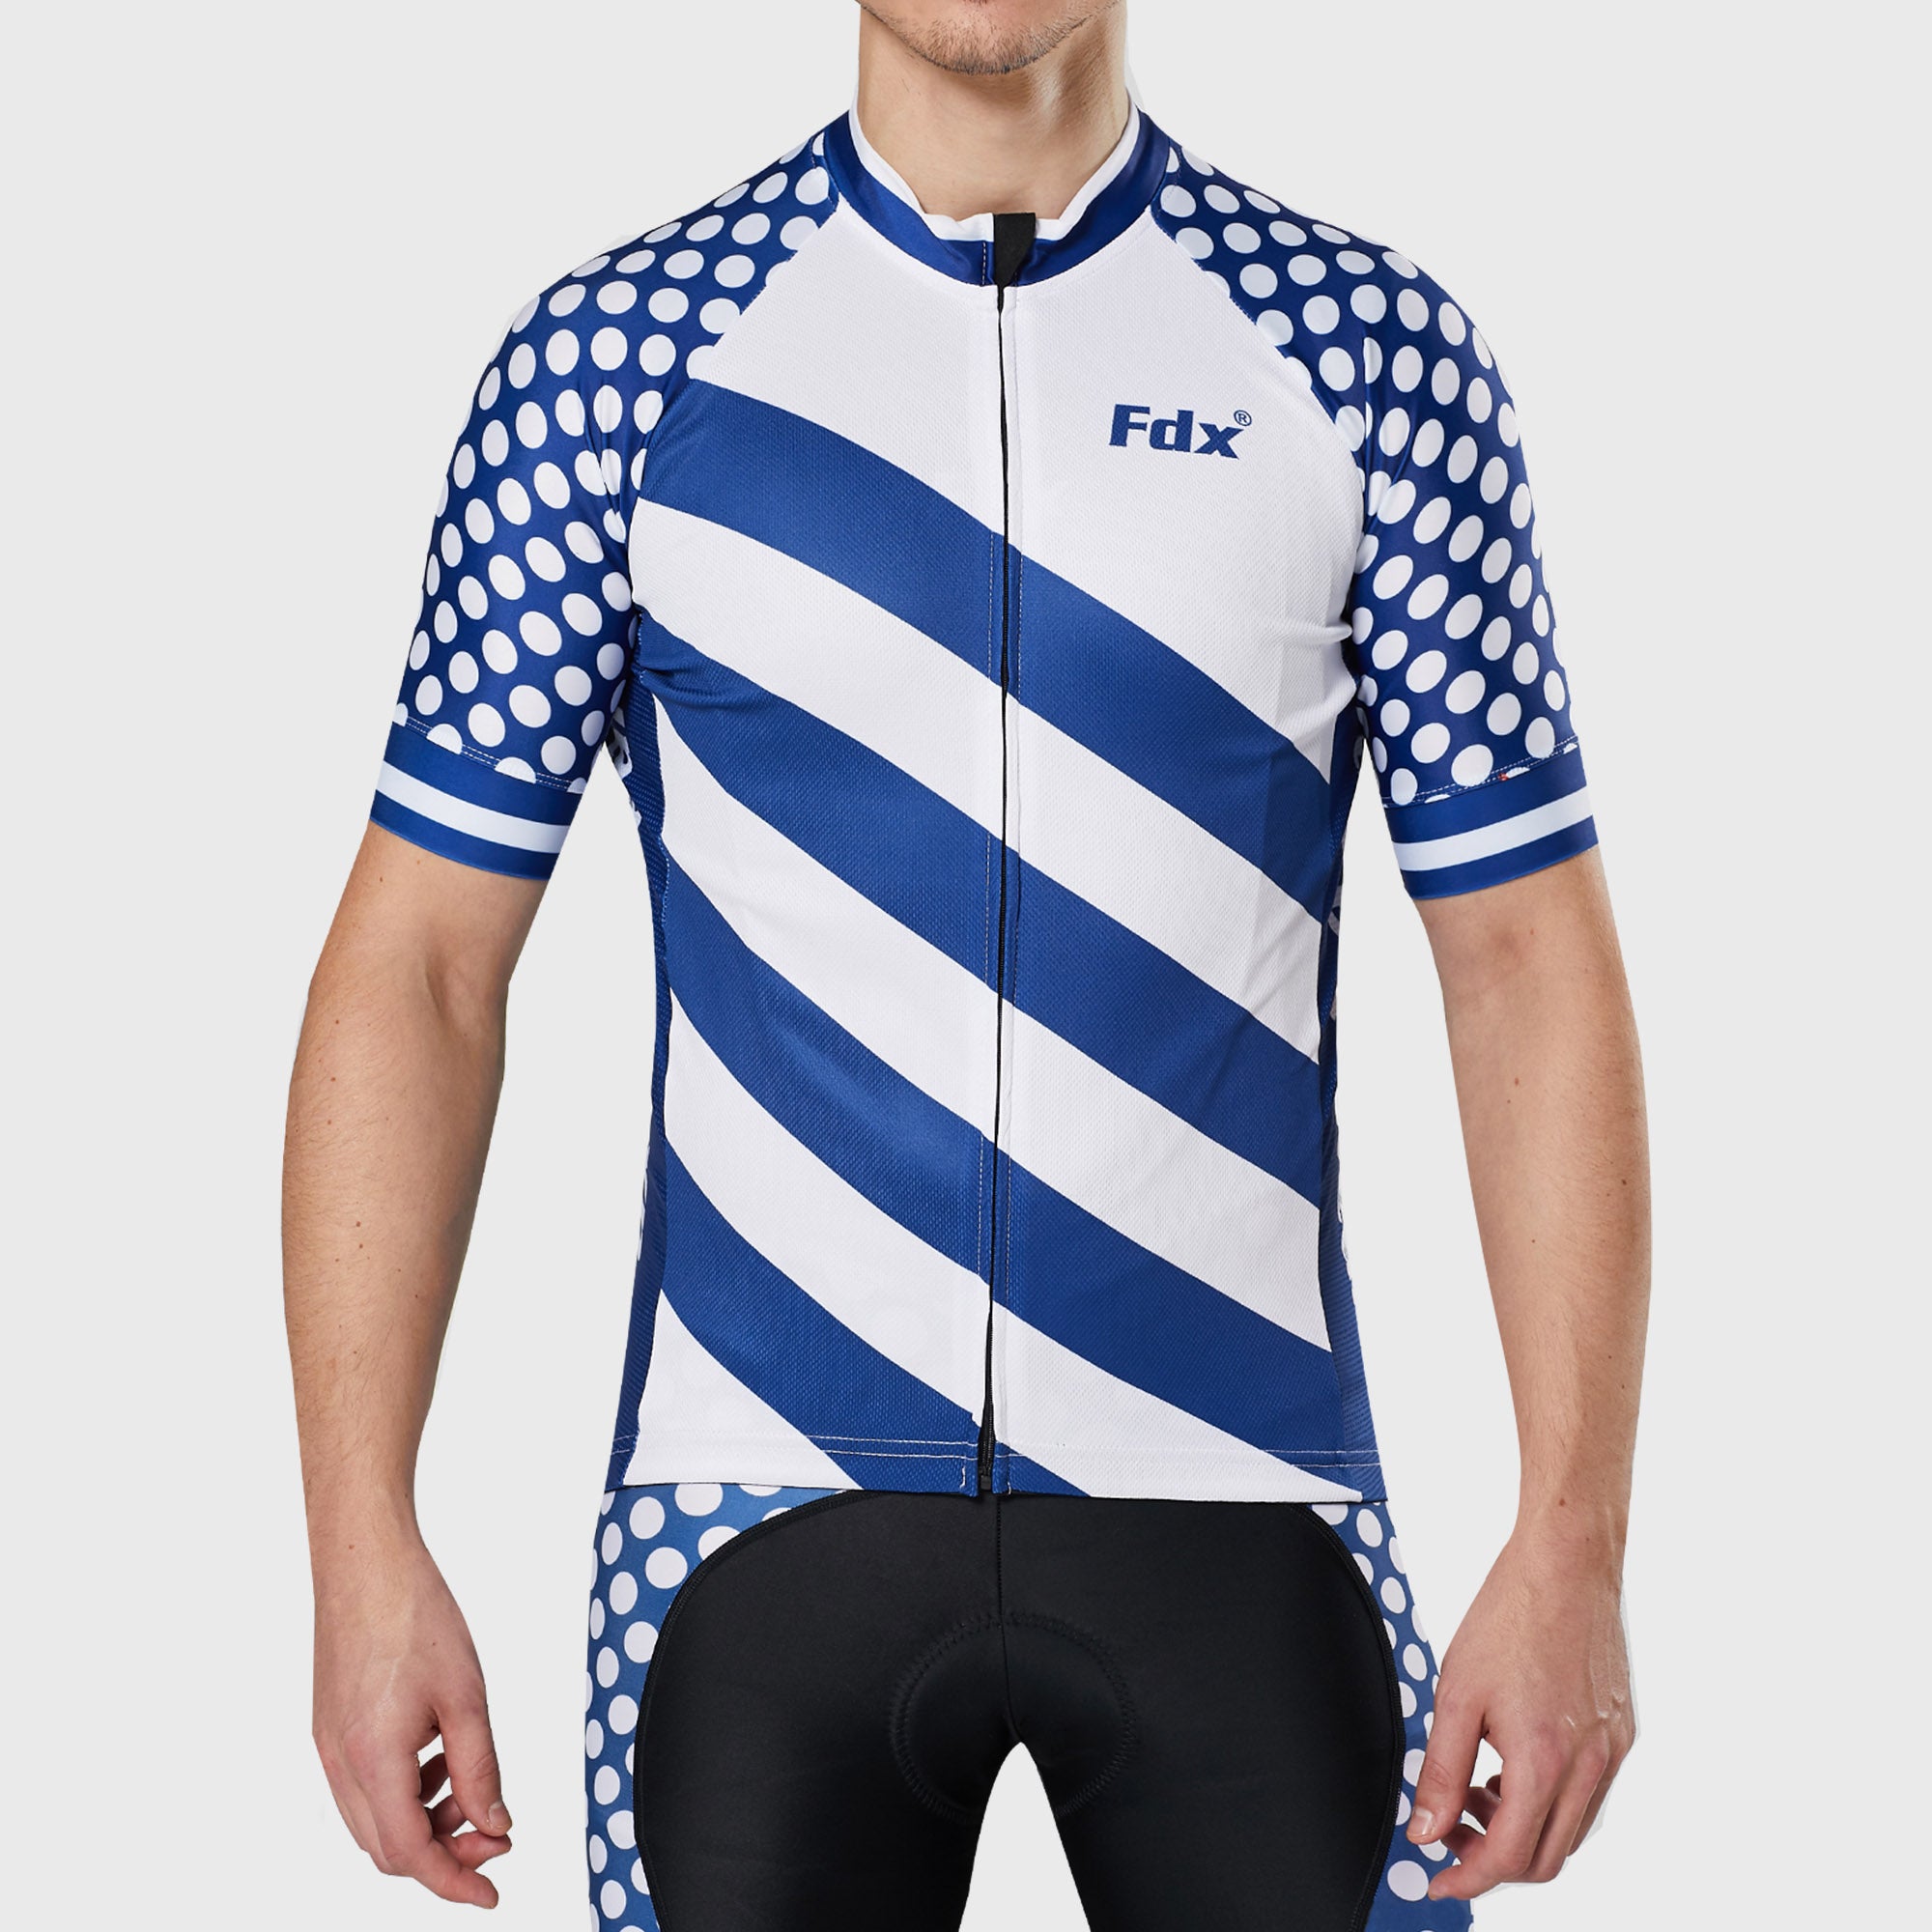 Fdx Mens Blue & White Short Sleeve Cycling Jersey for Summer Best Road Bike Wear Top Light Weight, Full Zipper, Pockets & Hi-viz Reflectors - Equin